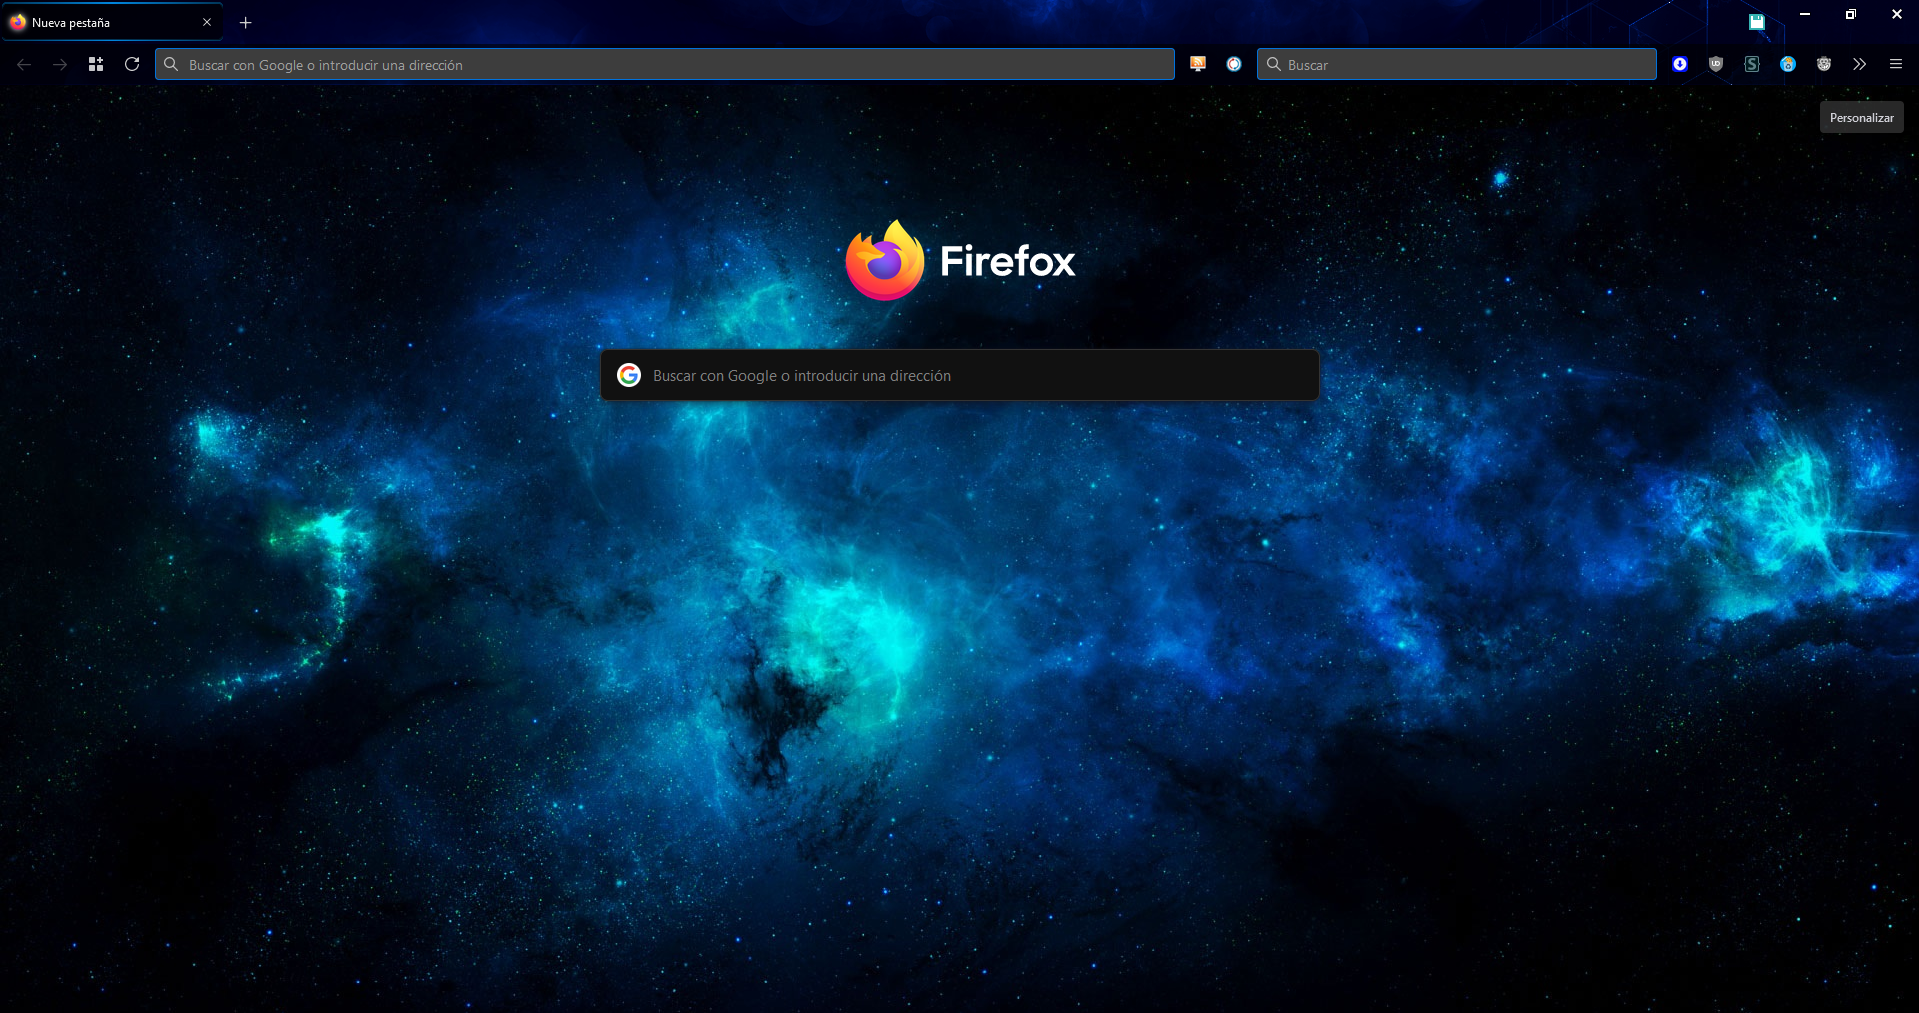 Custom Firefox home page